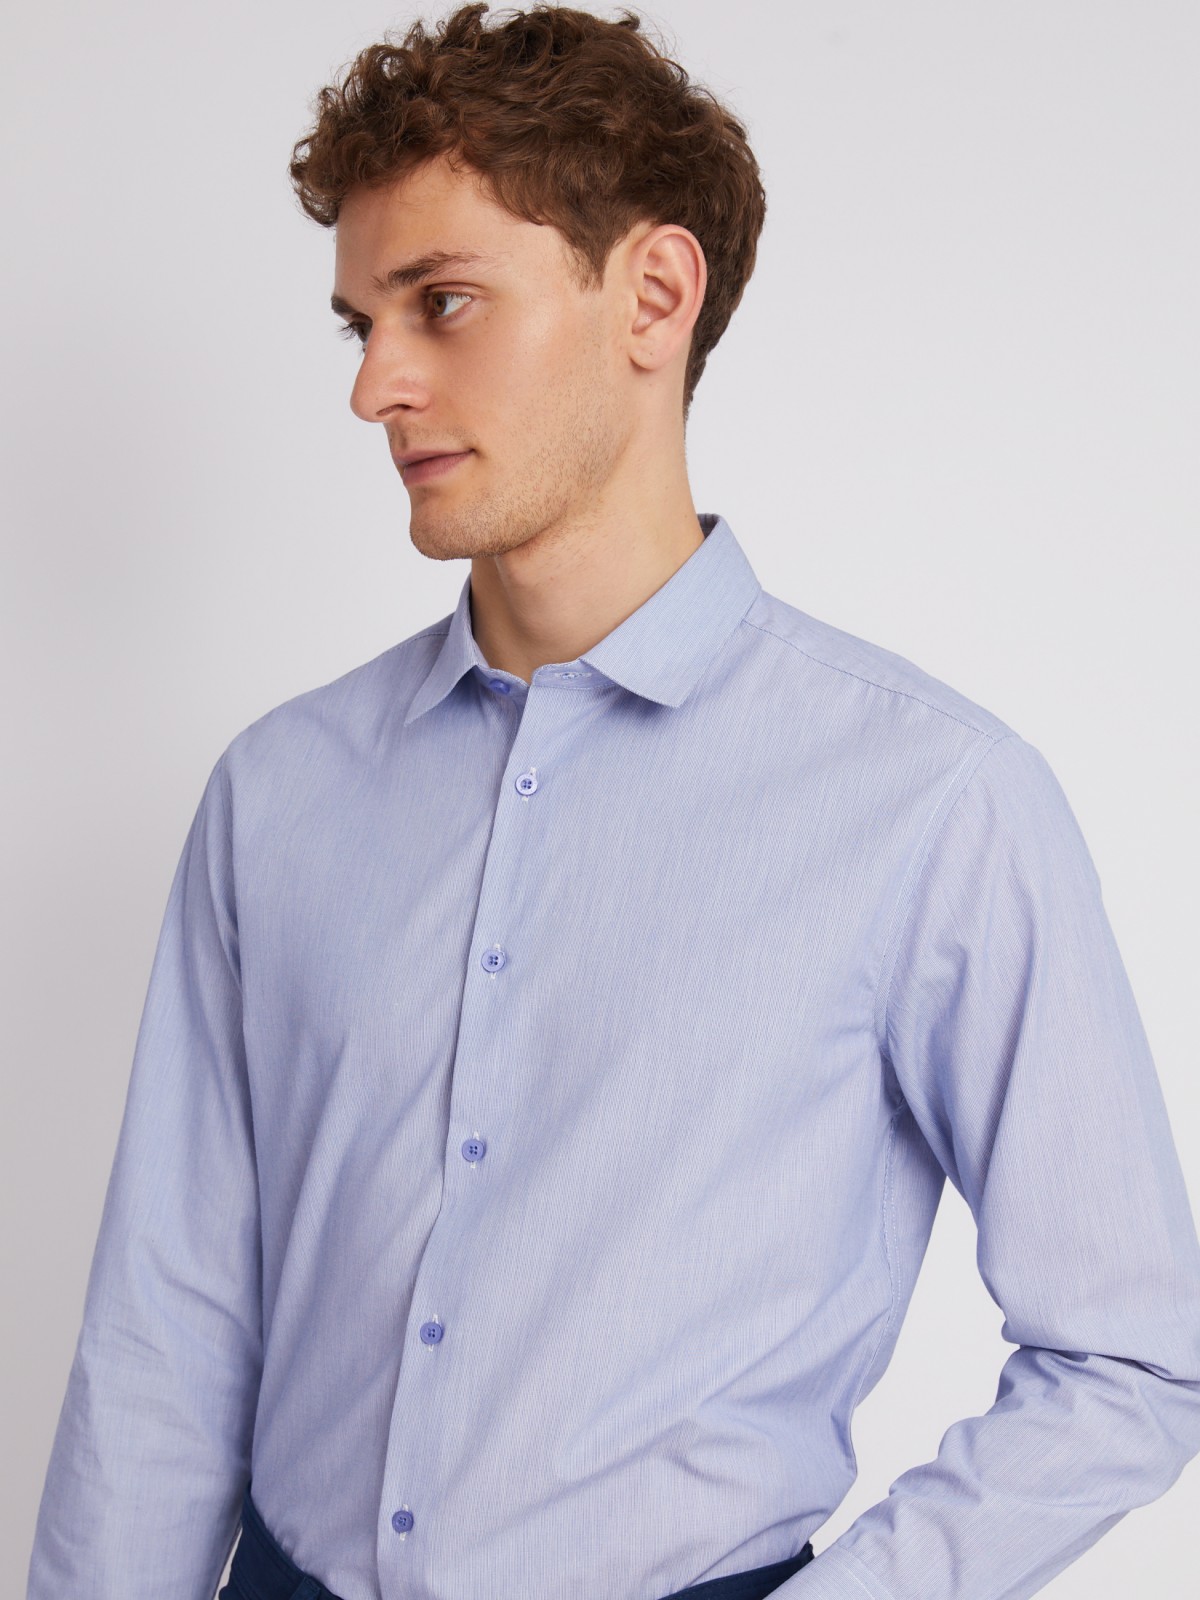 Офисная рубашка прямого силуэта с длинным рукавом и узором в полоску zolla 013322162062, цвет светло-голубой, размер M - фото 5